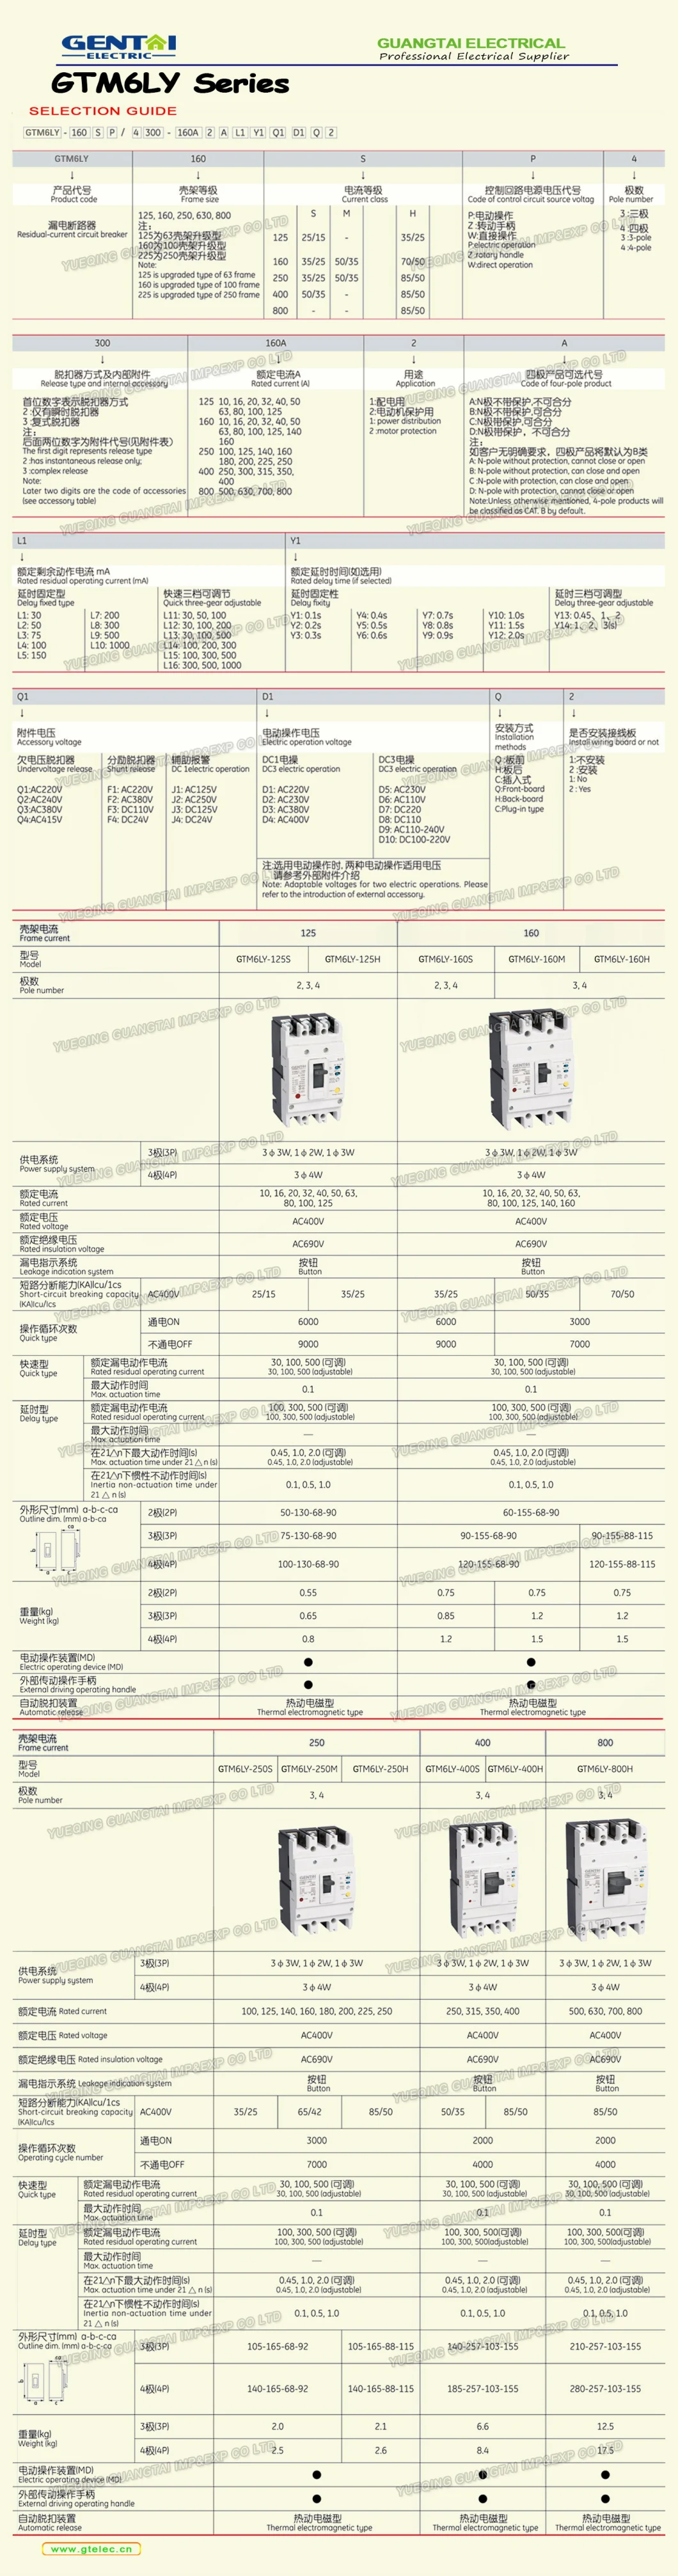 Gtelec Premium Gtm6e 3p 4p 160A 250A MCCB Intelligent Electronic Adjustable Type Moulded Case Circuit Breaker